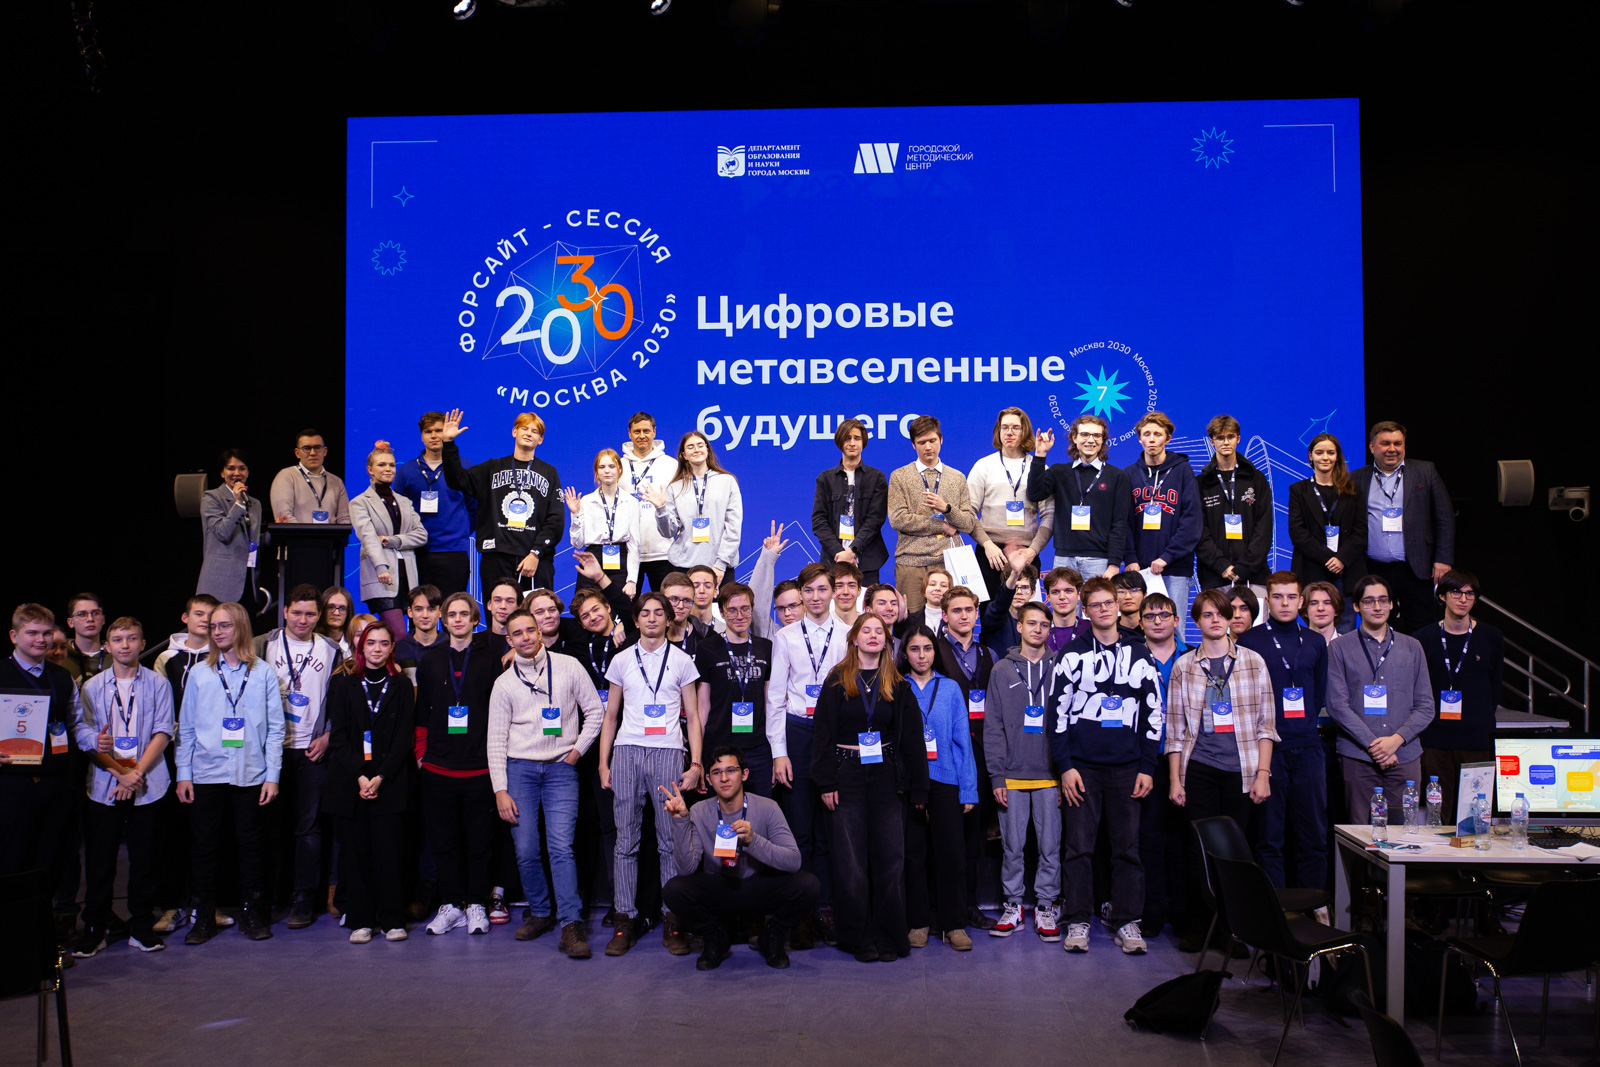 Форсайт-сессия «Москва 2030». Цифровые метавселенные будущего